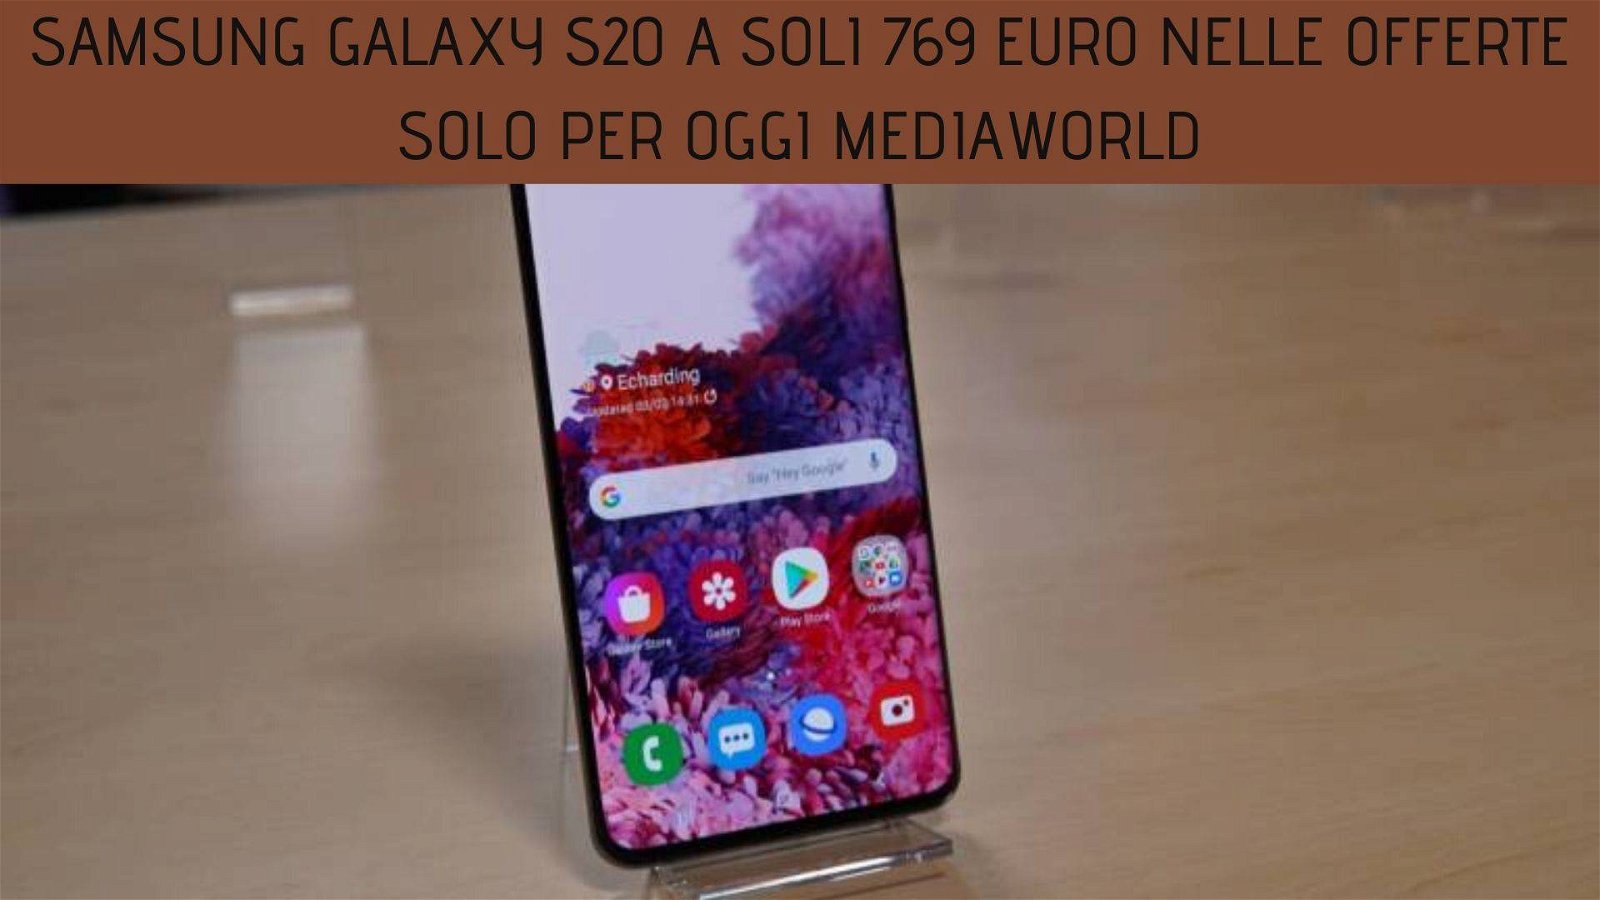 Immagine di Samsung Galaxy S20 a soli 769 euro nelle offerte Solo per Oggi Mediaworld